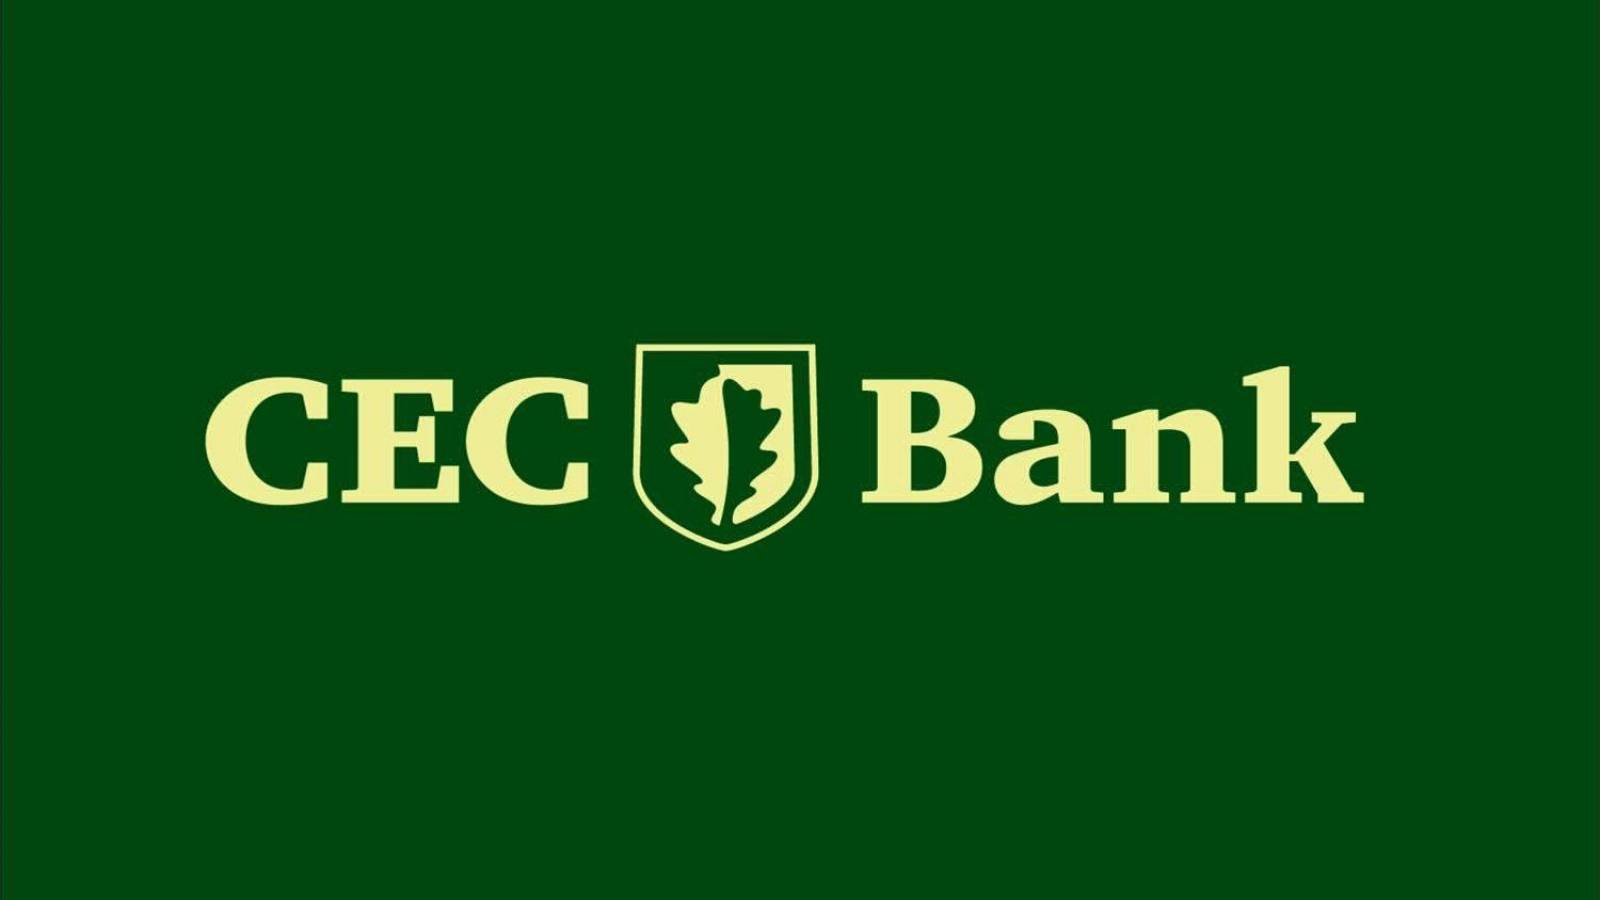 CEC Bank pays